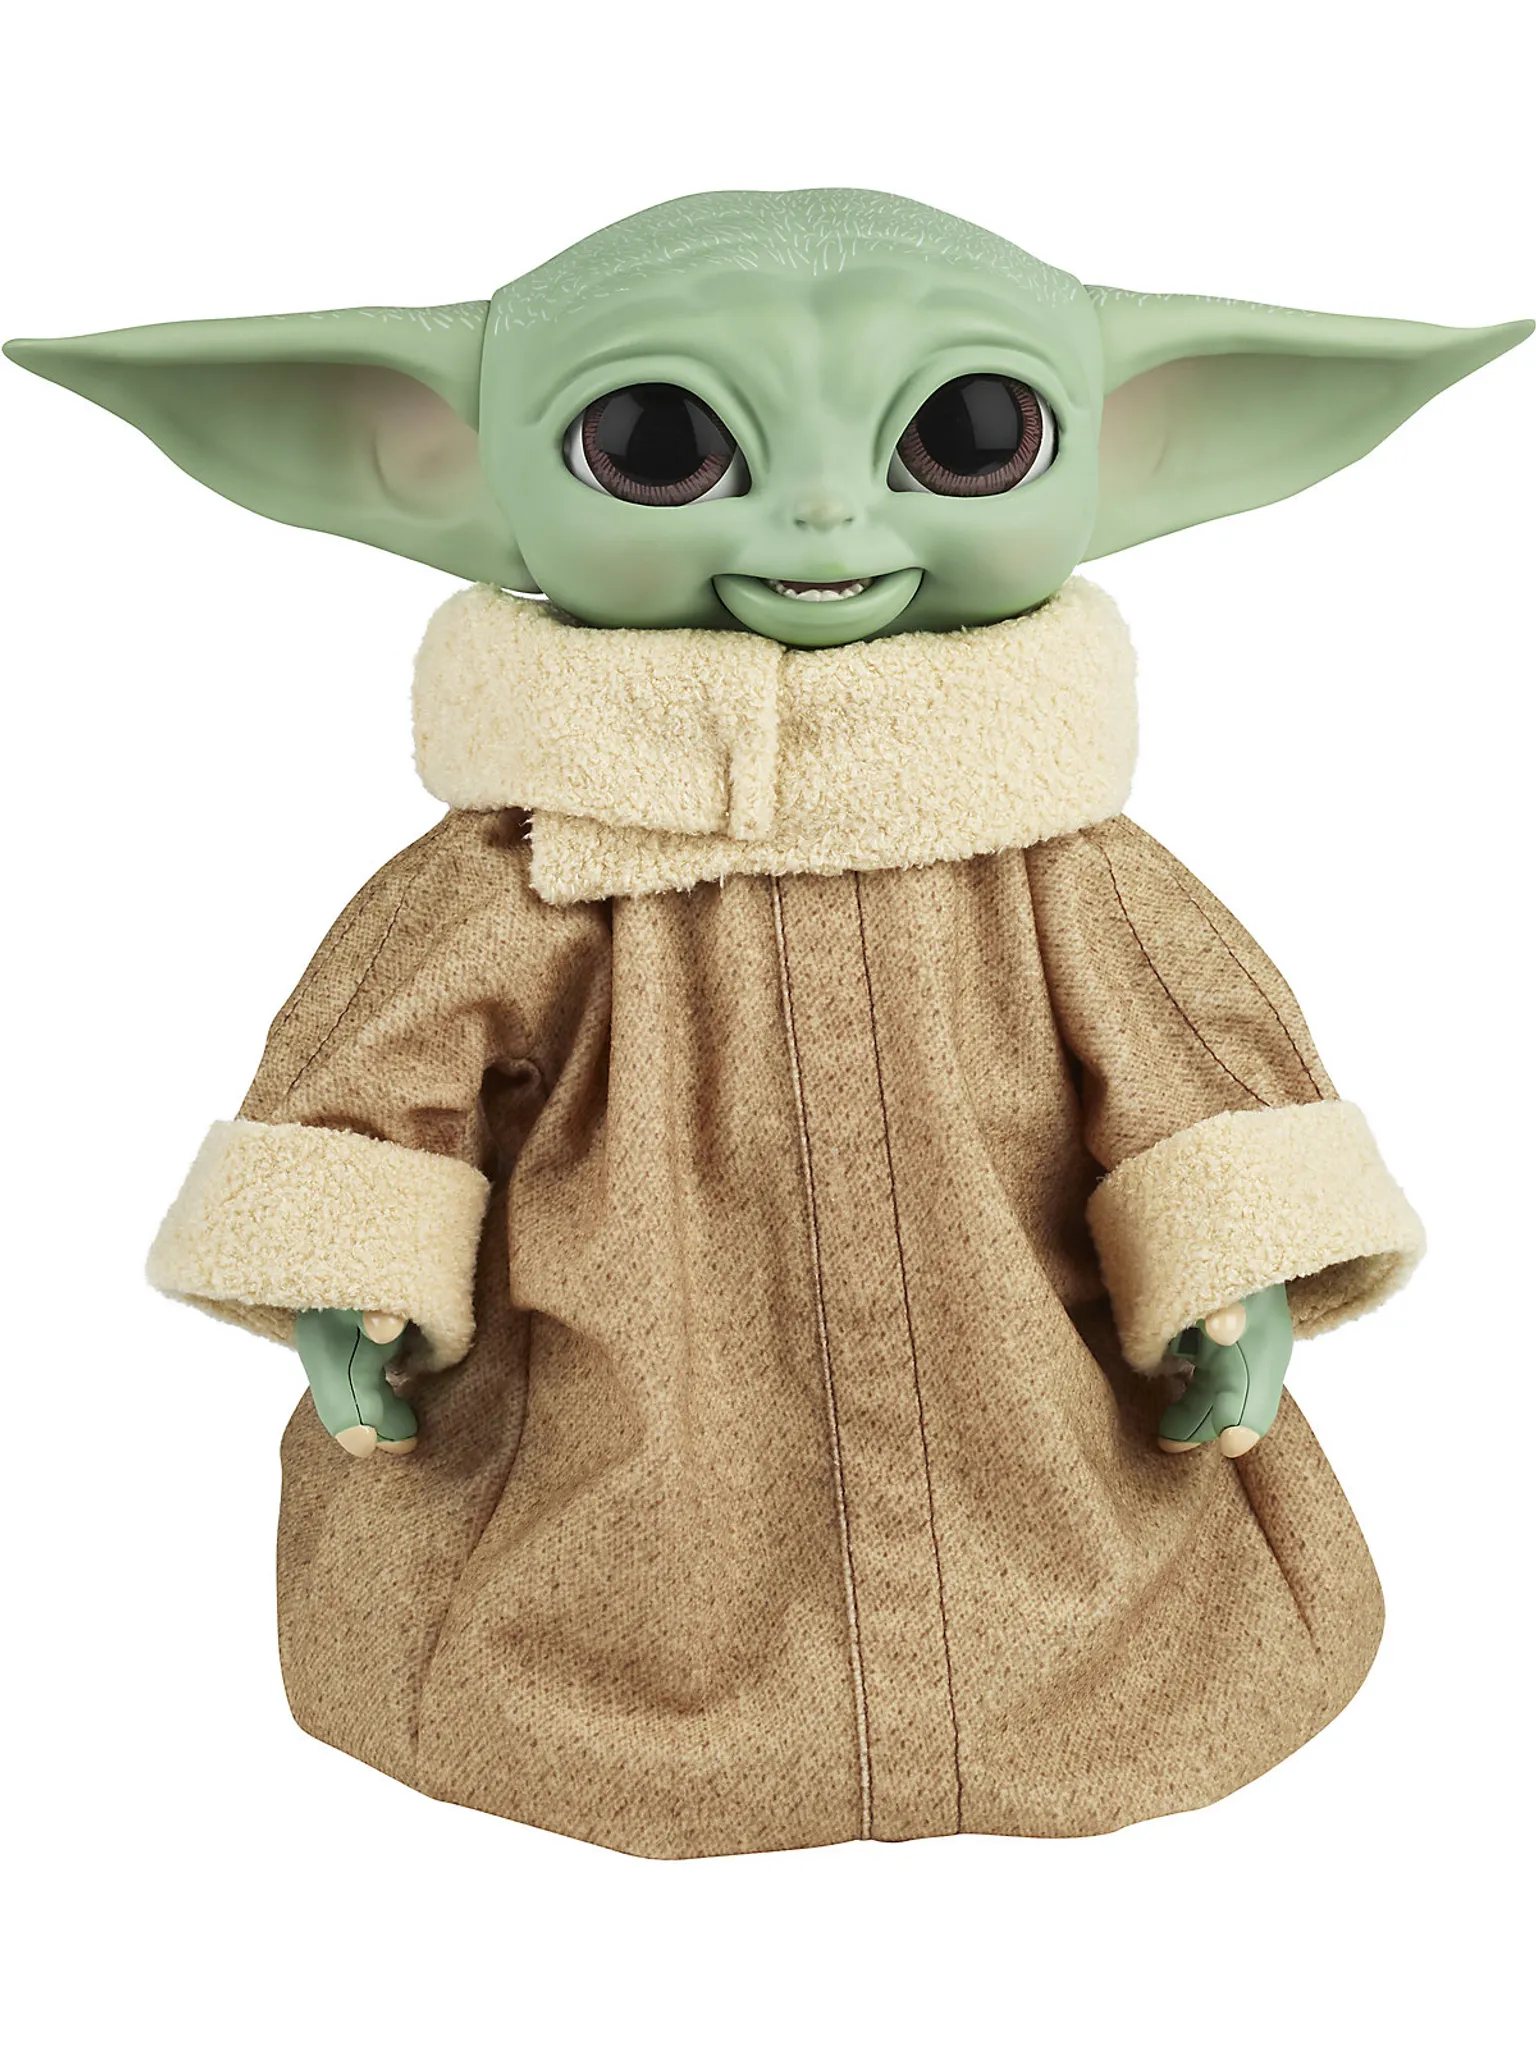 XXL Baby Yoda Plüschtier / Kuscheltier Geschenk kaufen